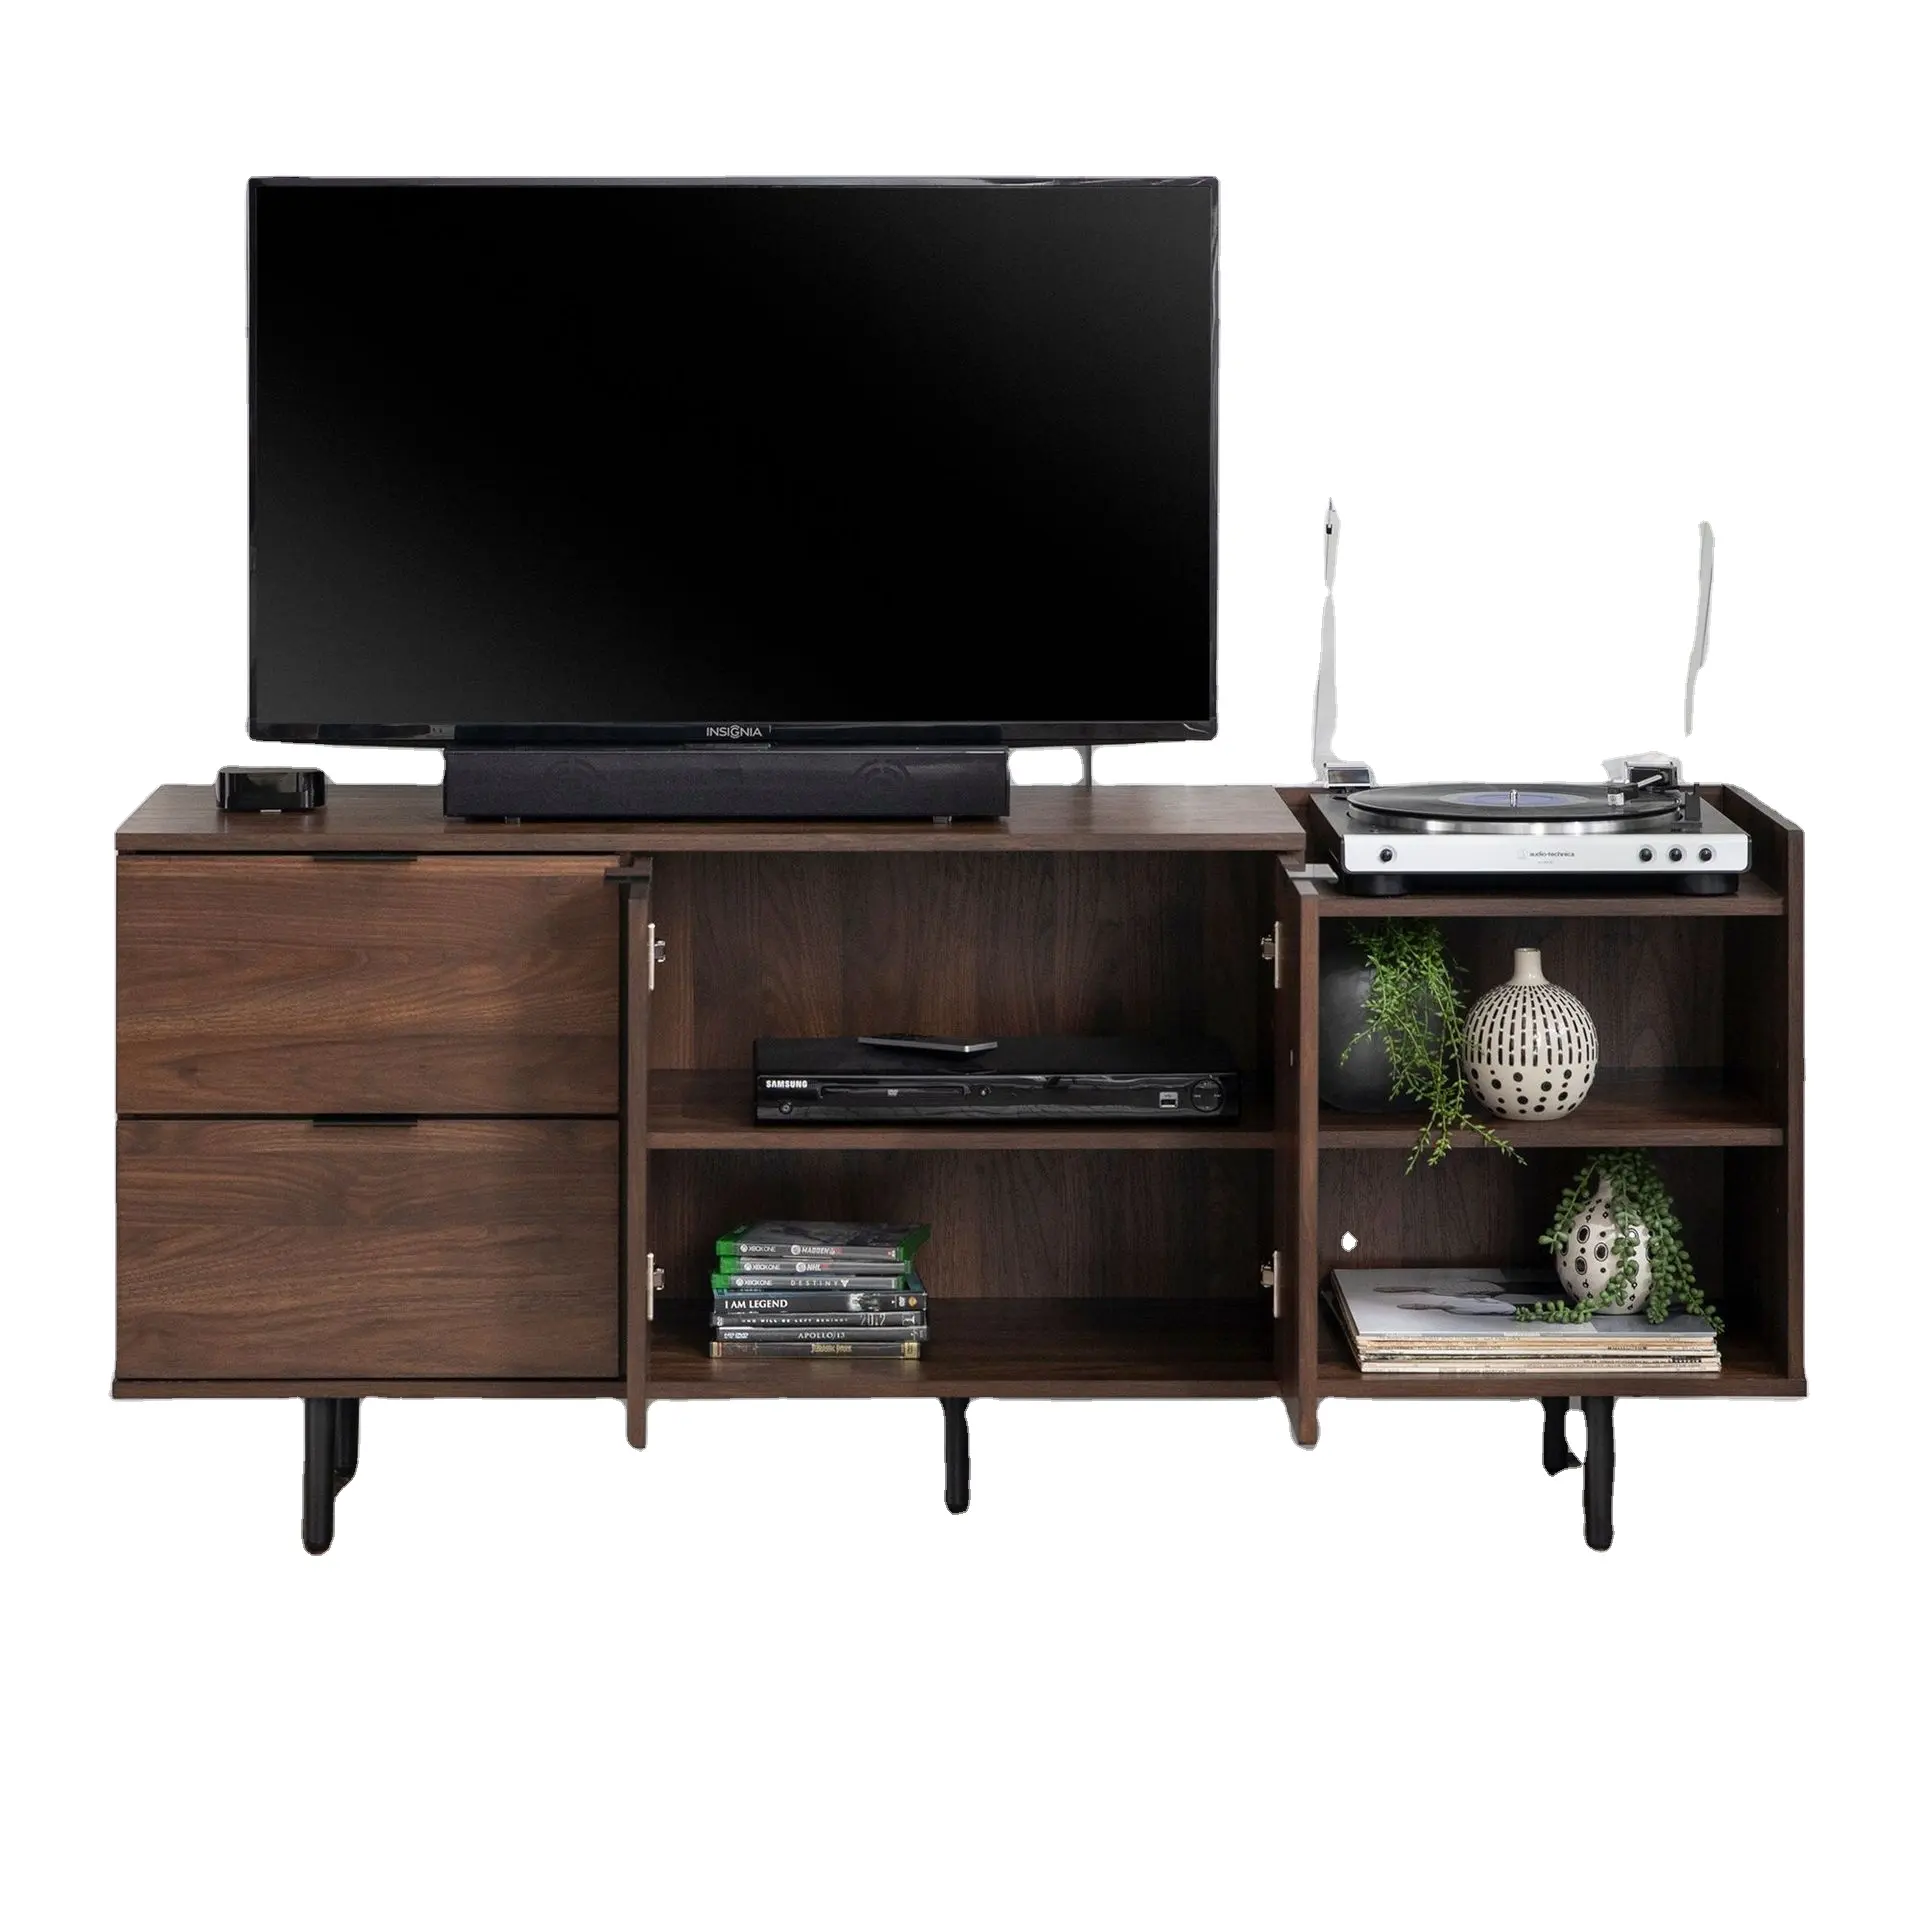 Vekin mobilya Modern tarzı toptan duvar ahşap medya konsol oturma odası TV standı TV ünitesi dolabı